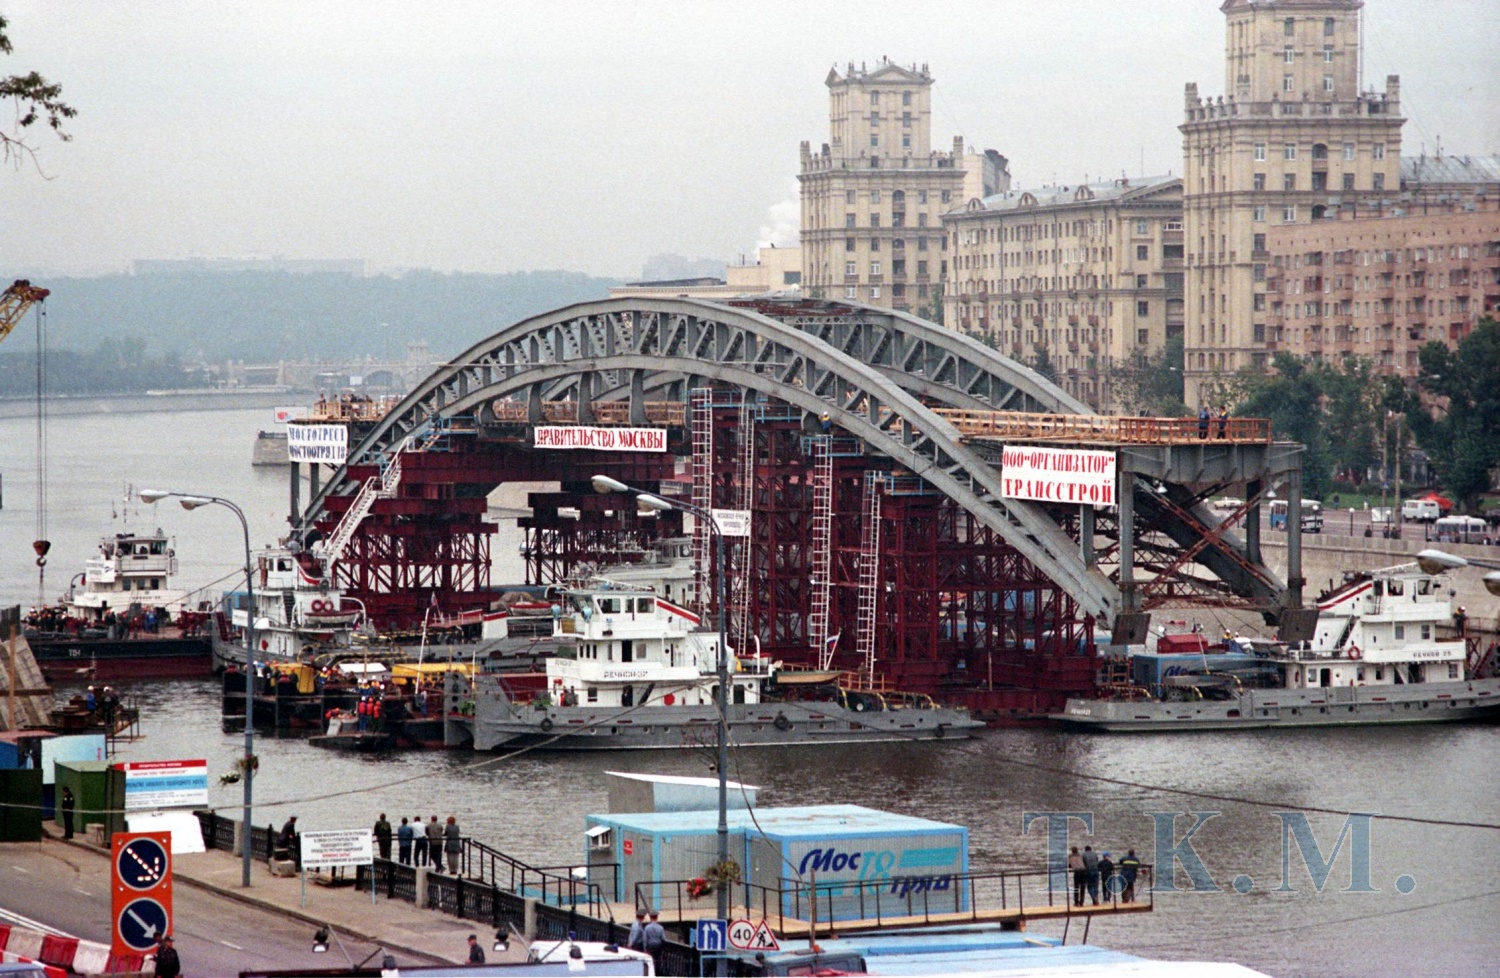 Старый Краснолужский мост в г. Москве